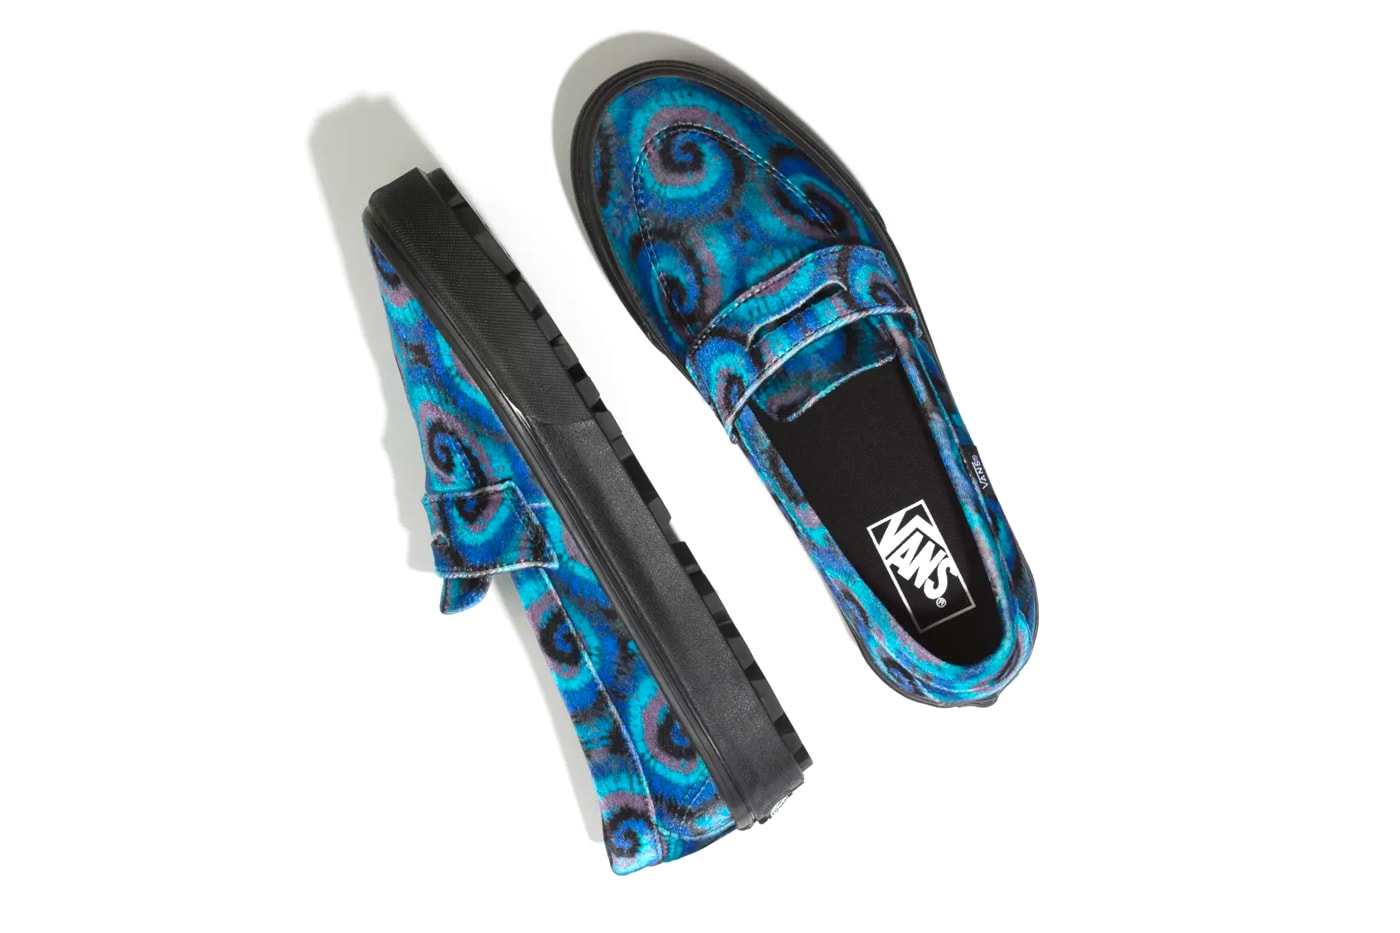 Vans Old Skool Style 53 Tie Dye Pack Release Info Date Black Blue 